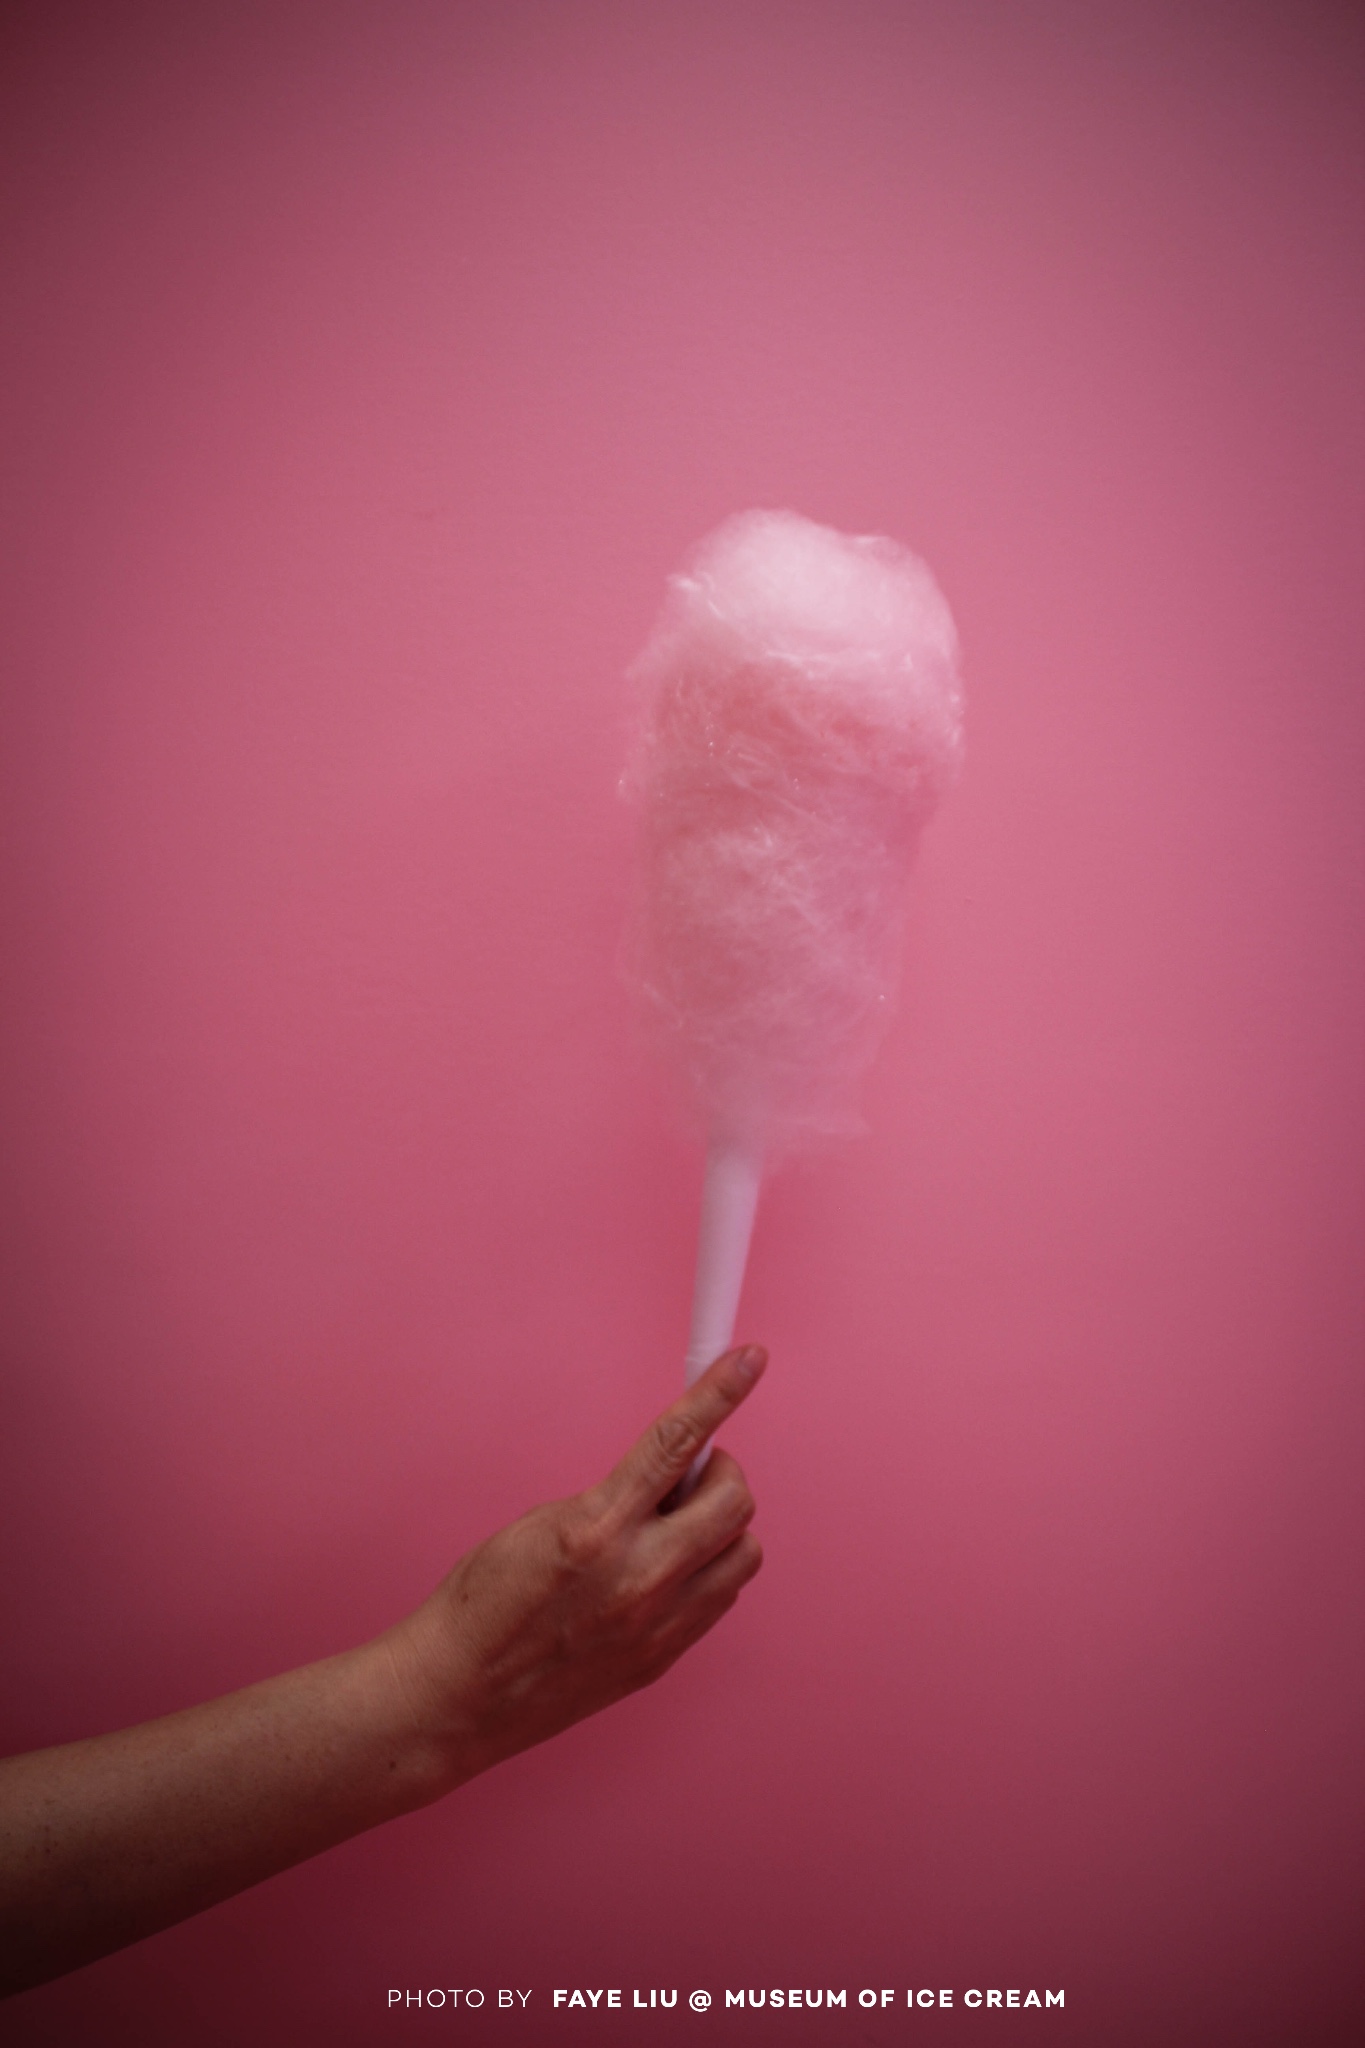 旧金山冰激凌博物馆,空气中都冒着粉红泡泡